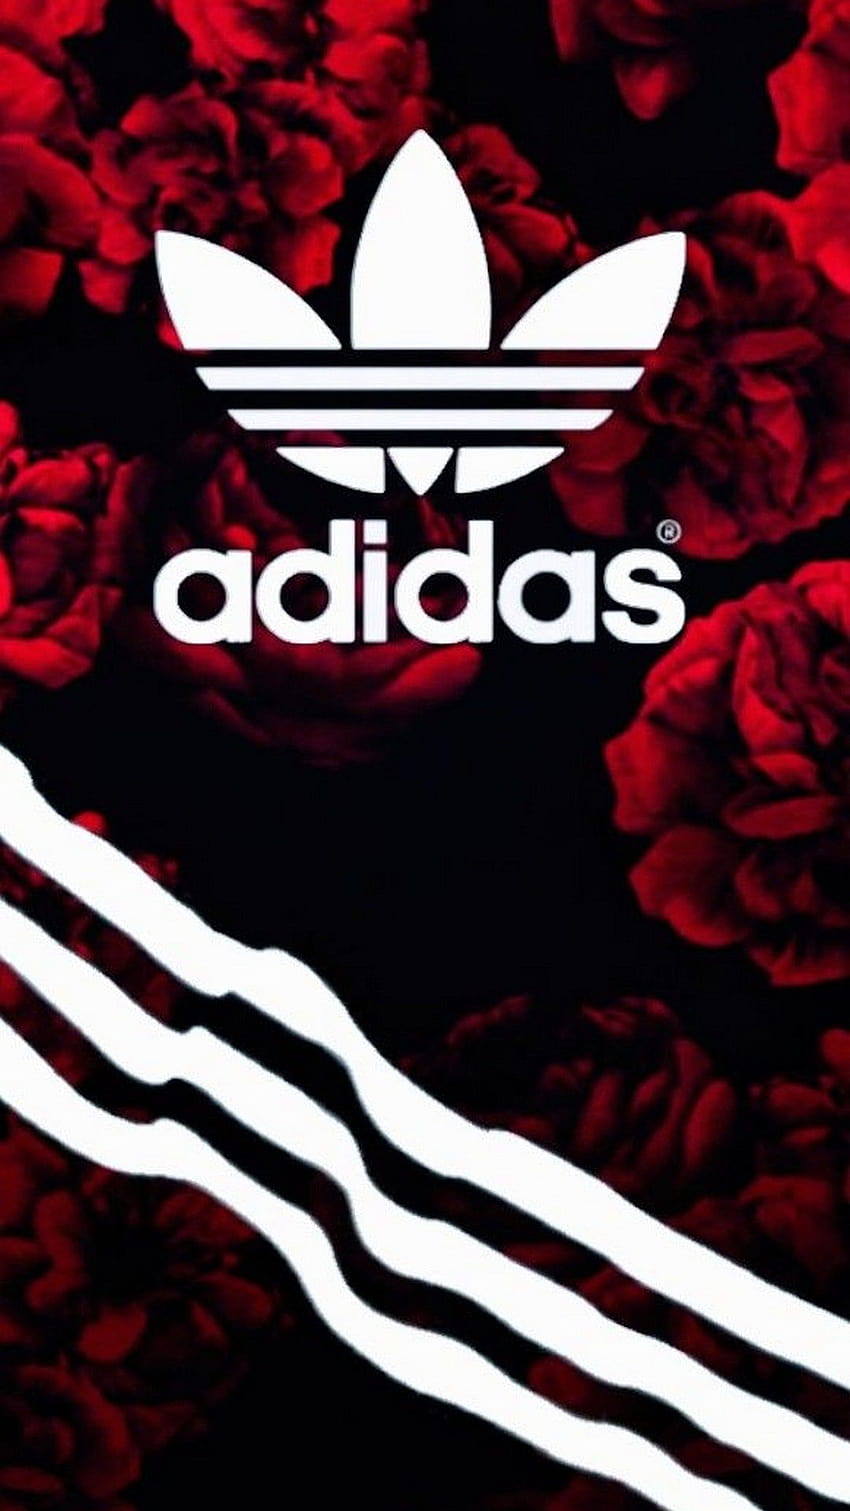 Arsenal 2019 Adidas, arsenal adidas HD phone wallpaper